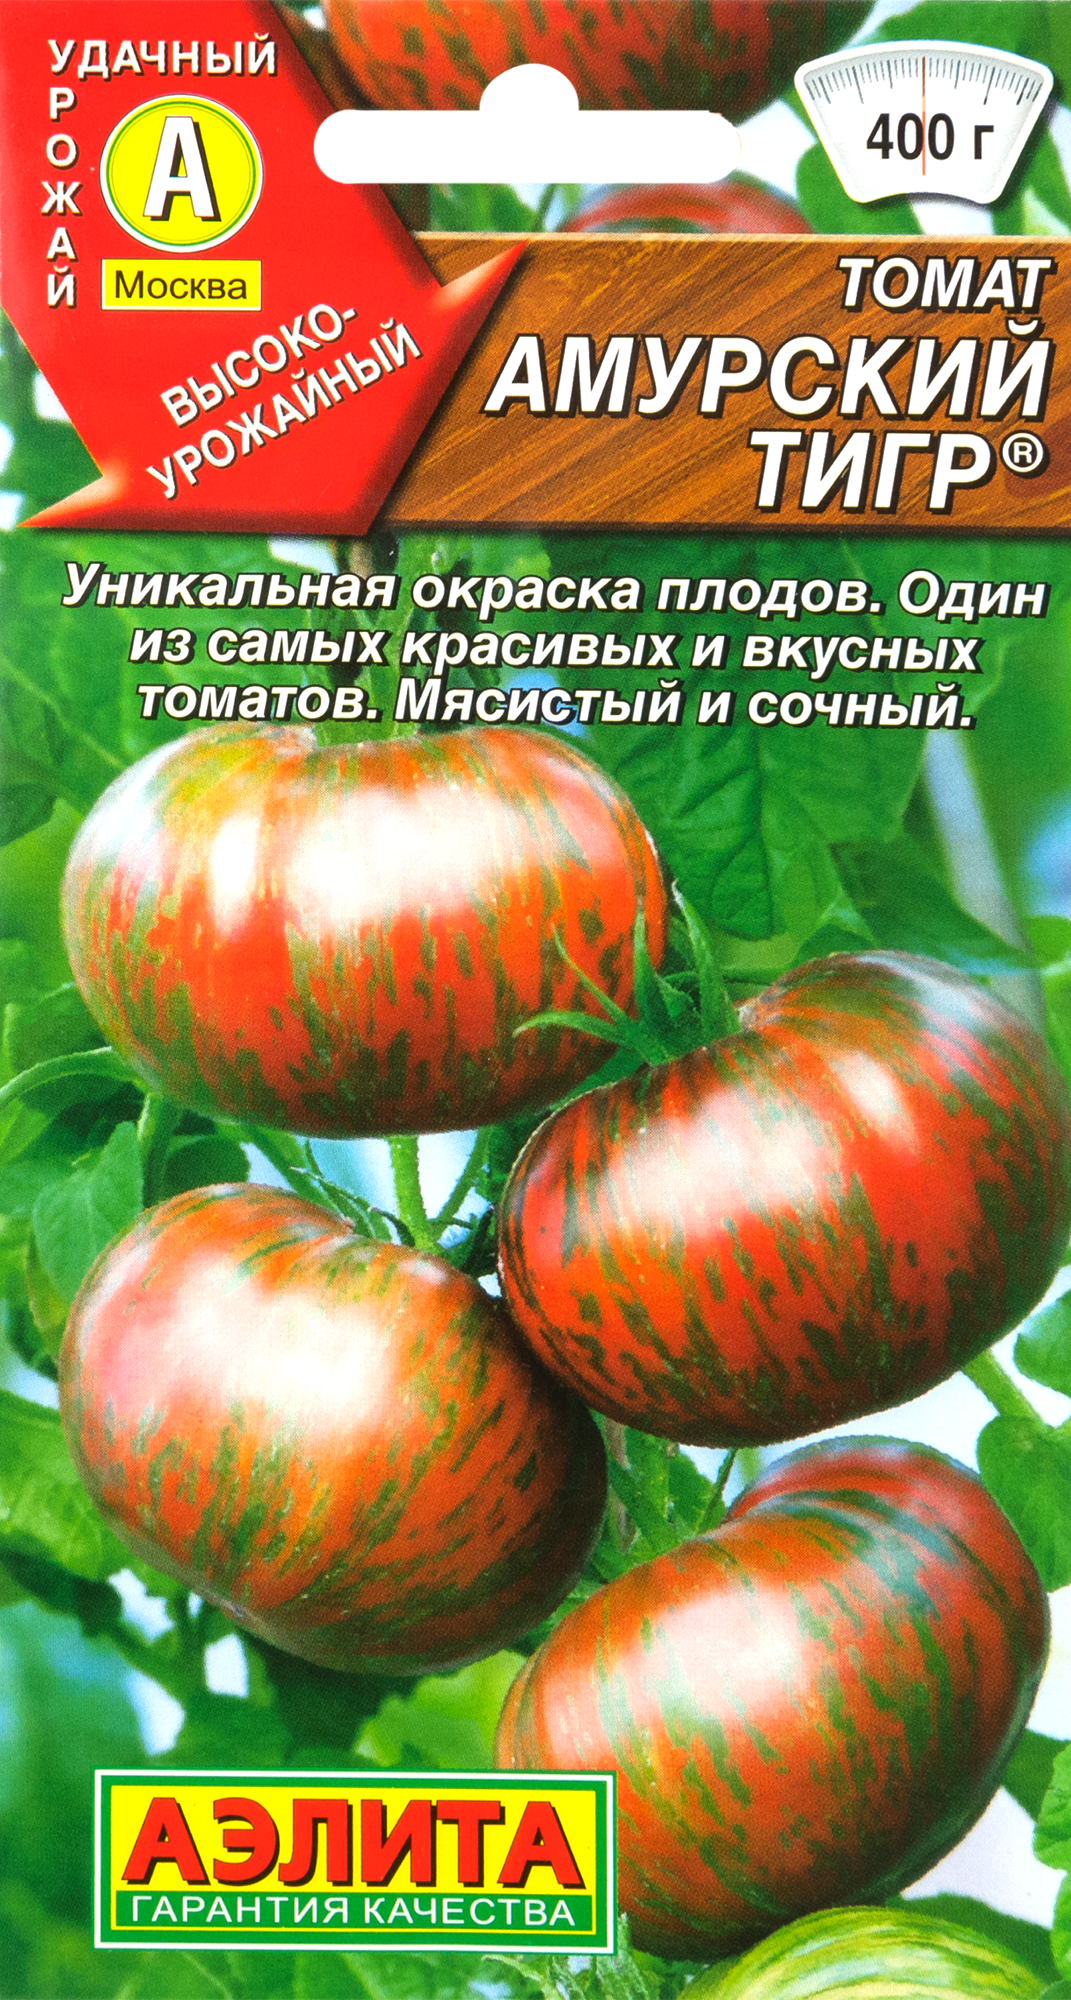 Семена Томат «Амурский тигр» в Москве – купить по низкой цене винтернет-магазине Леруа Мерлен